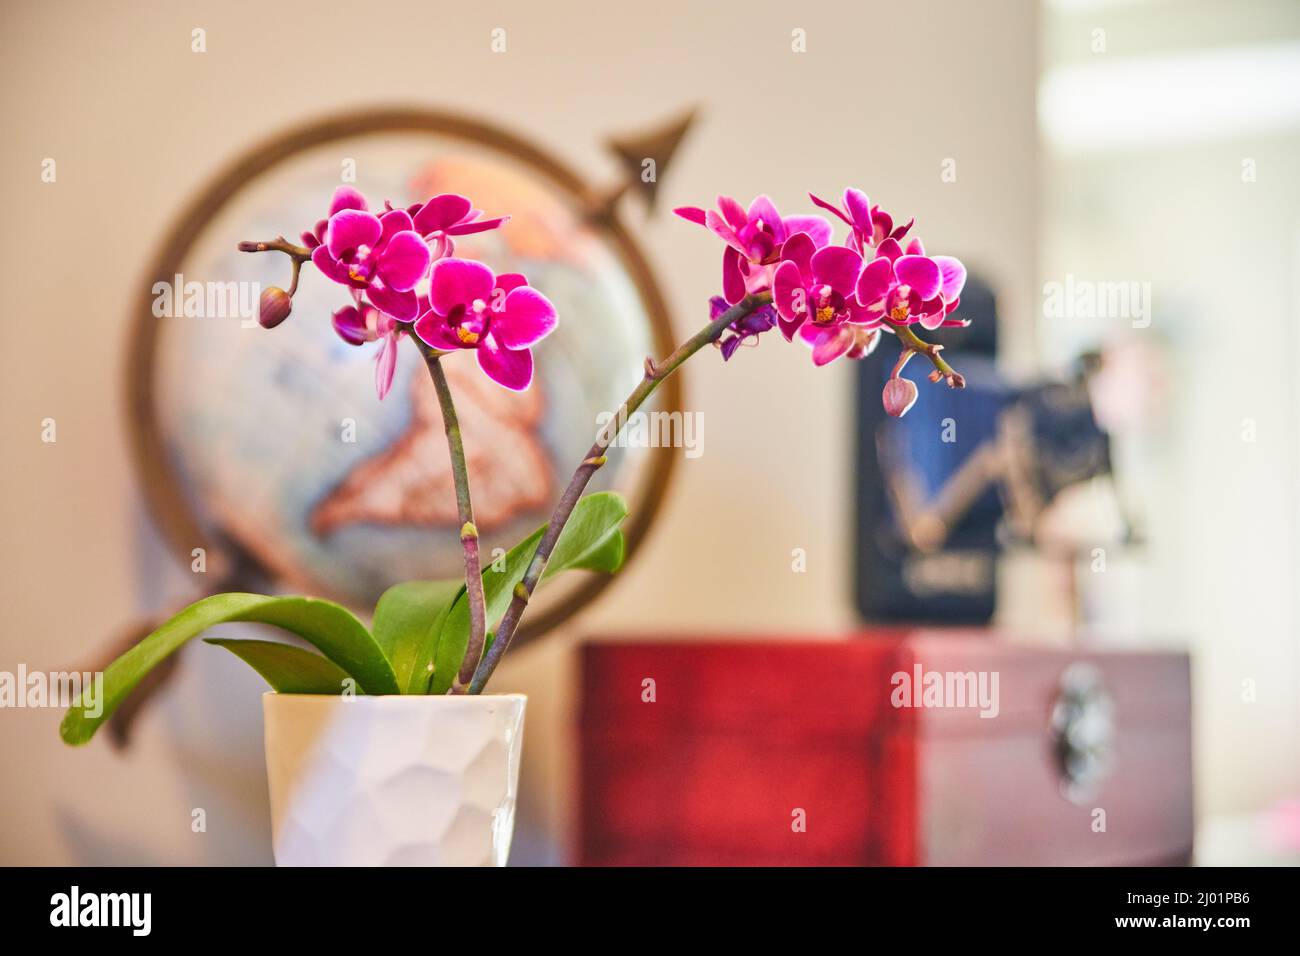 Vita morta di fiori rosa orchidee in casa con globo e macchina fotografica Foto Stock